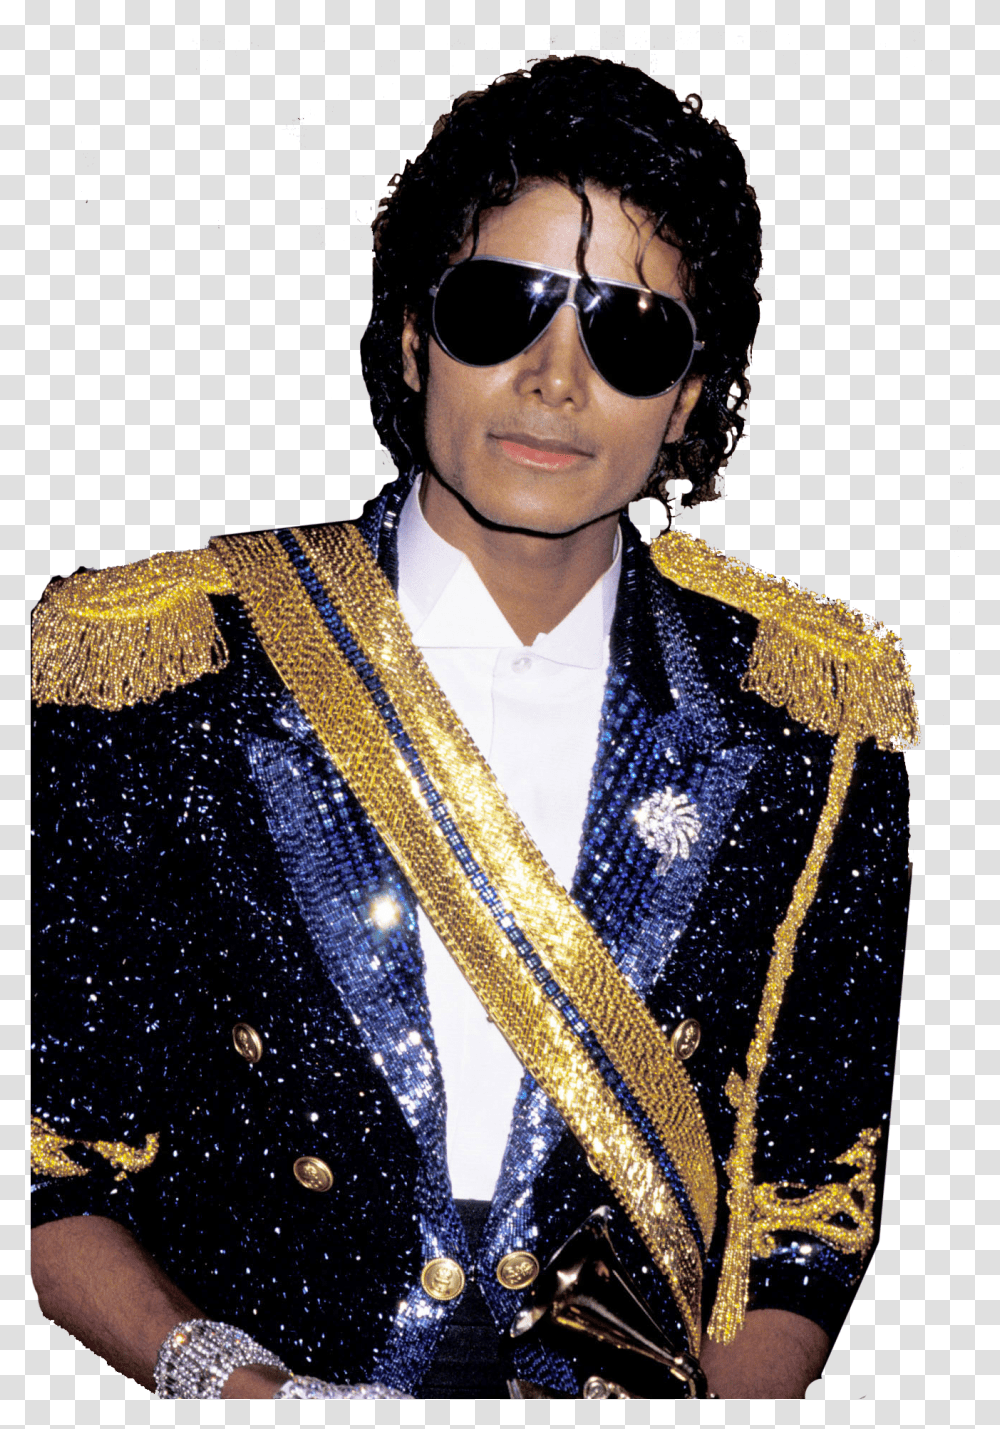 Michael Jackson Image Michael Jackson Lol Surprise Doll, Sunglasses, Accessories, Person Transparent Png